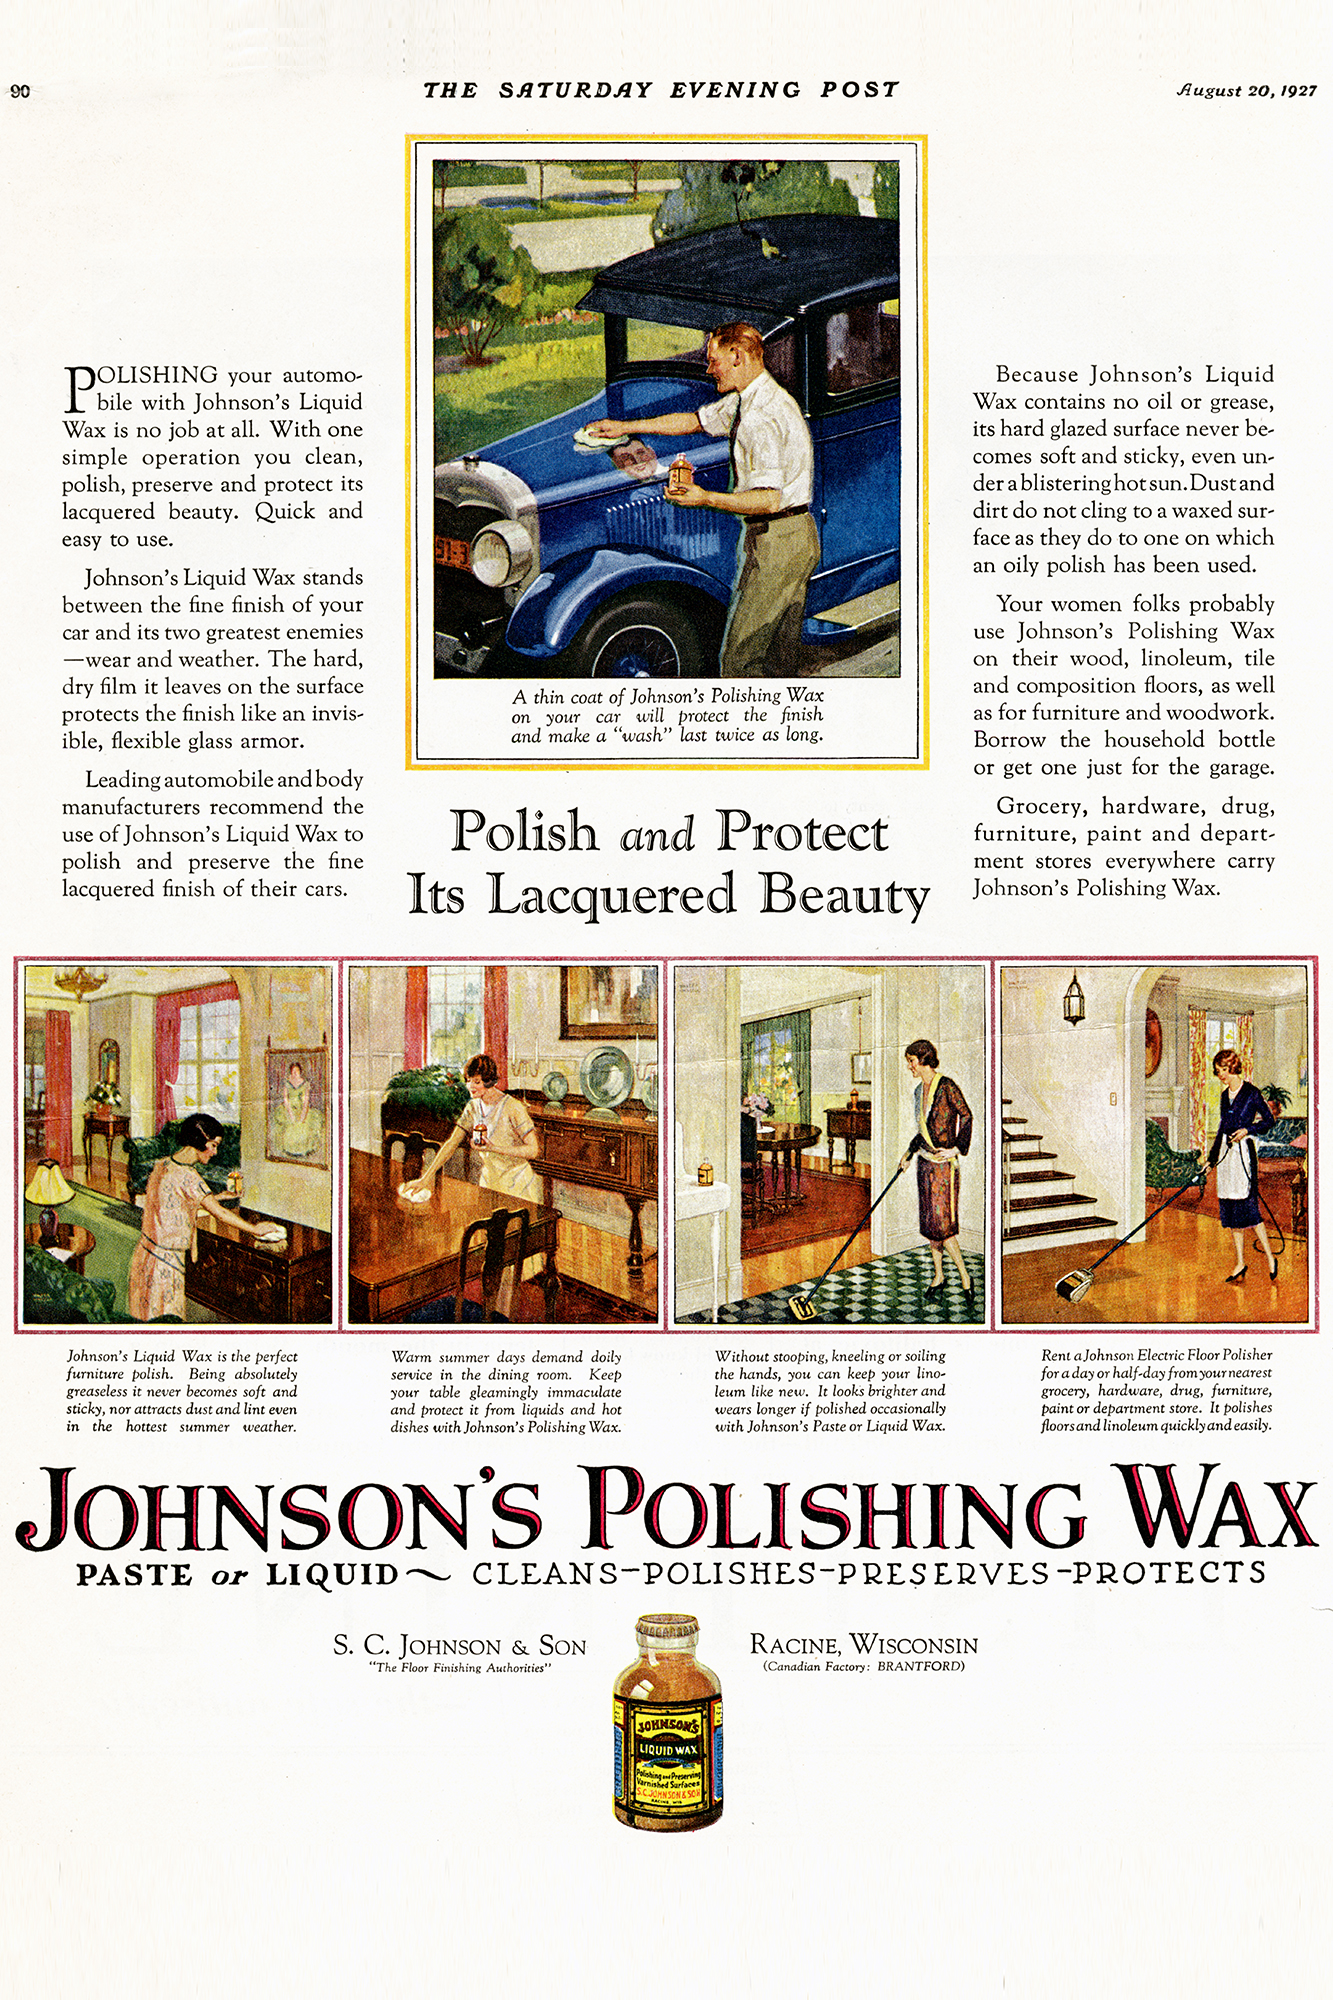 Anzeige von Johnson’s Wax aus dem Jahr 1927 in der Saturday Evening Post